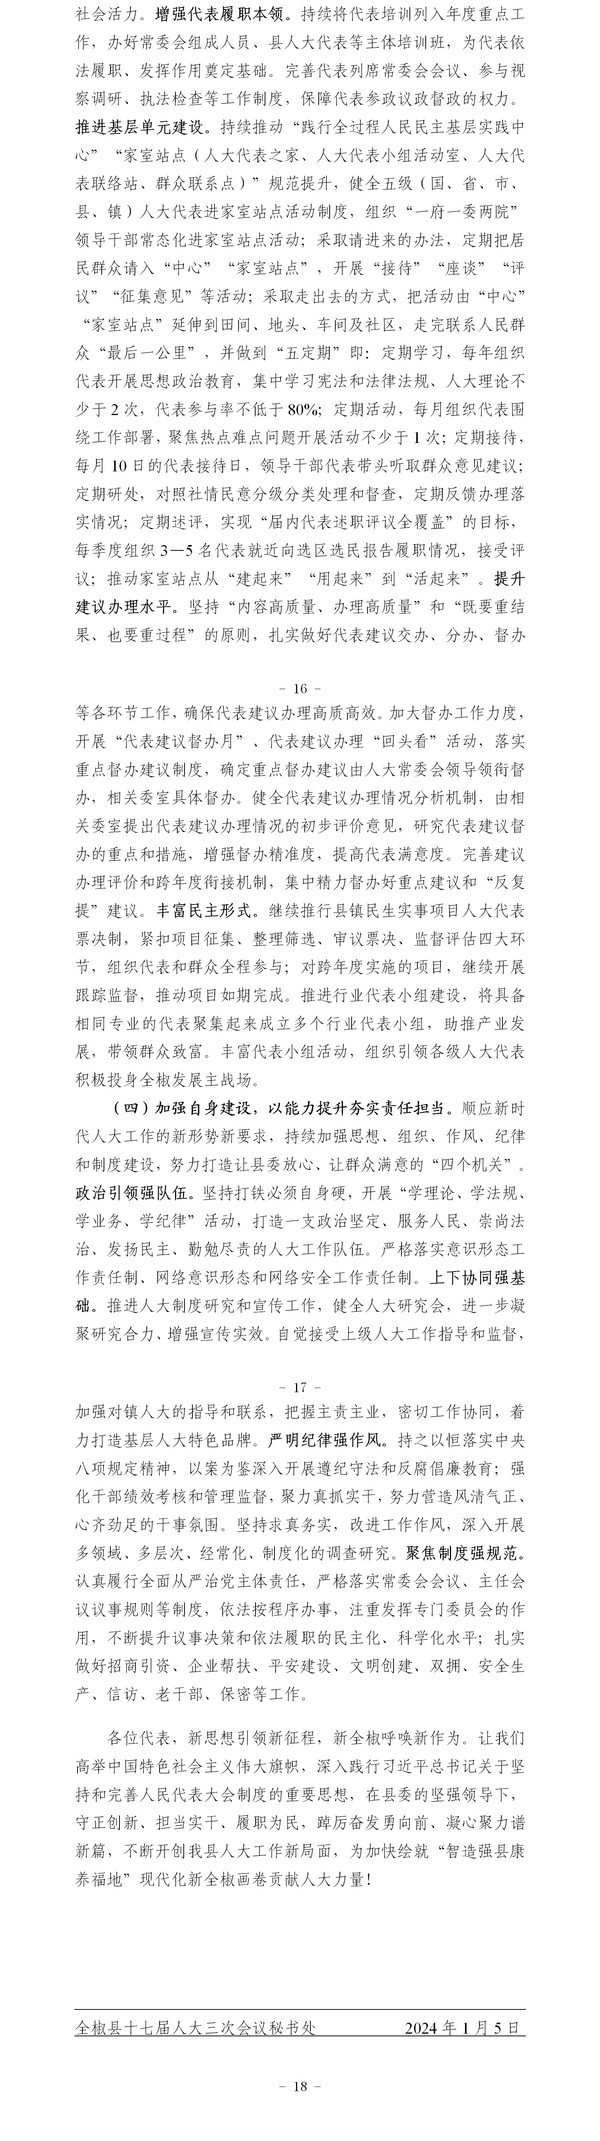 全椒县人民代表大会常务委员会工作报告定稿2024.1.4_02.png